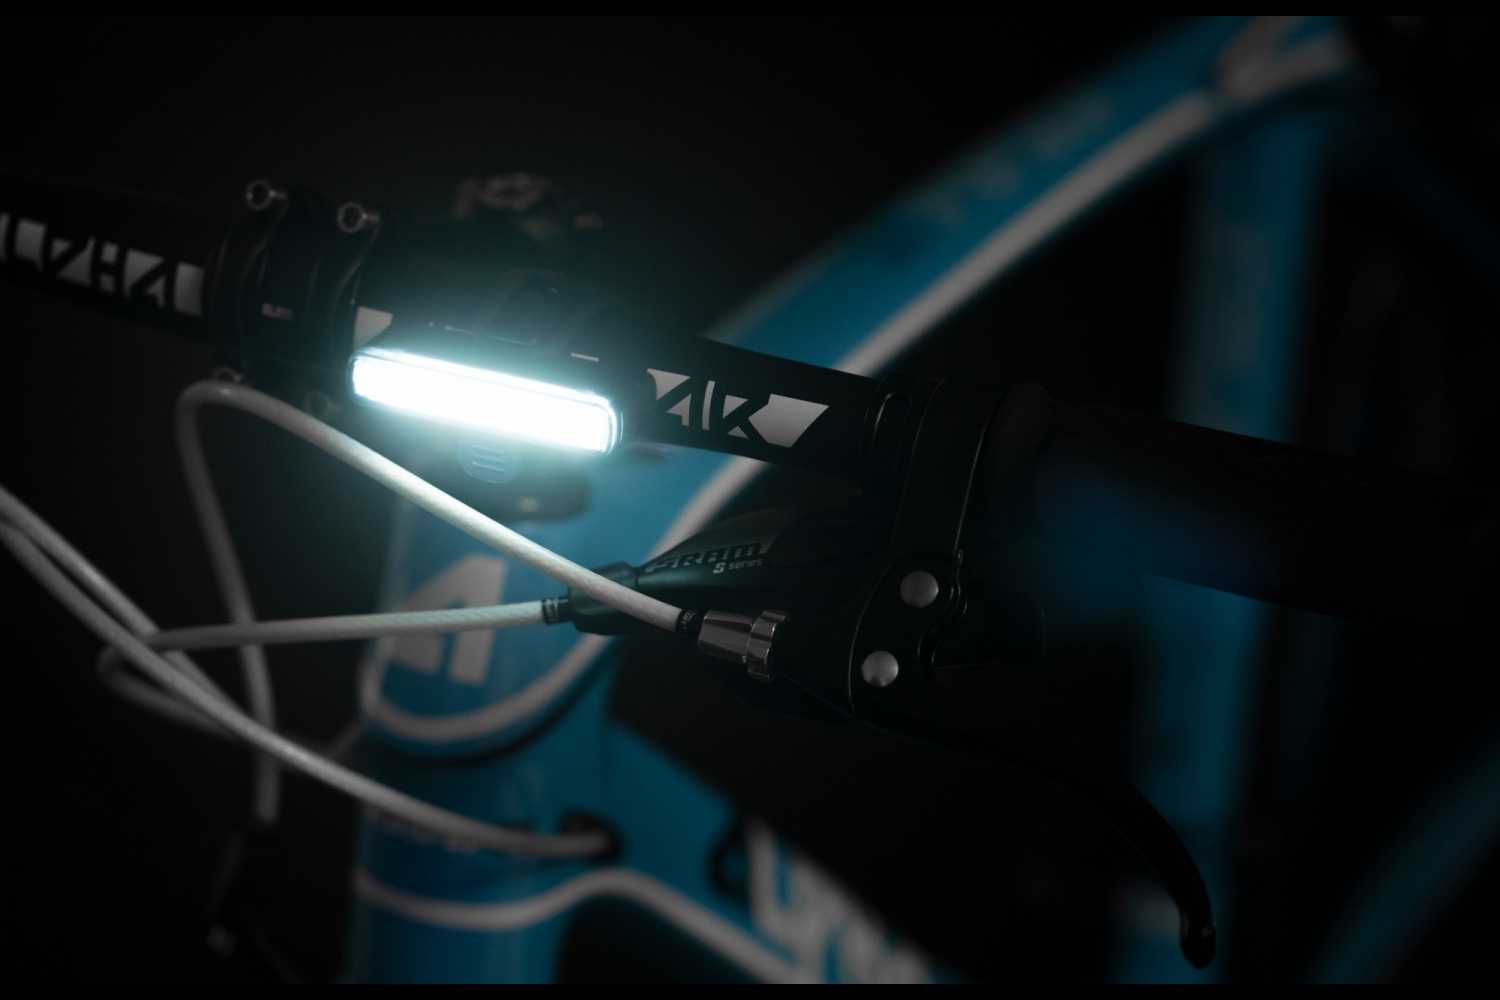 Kit éclairage Ultralight LED CREE